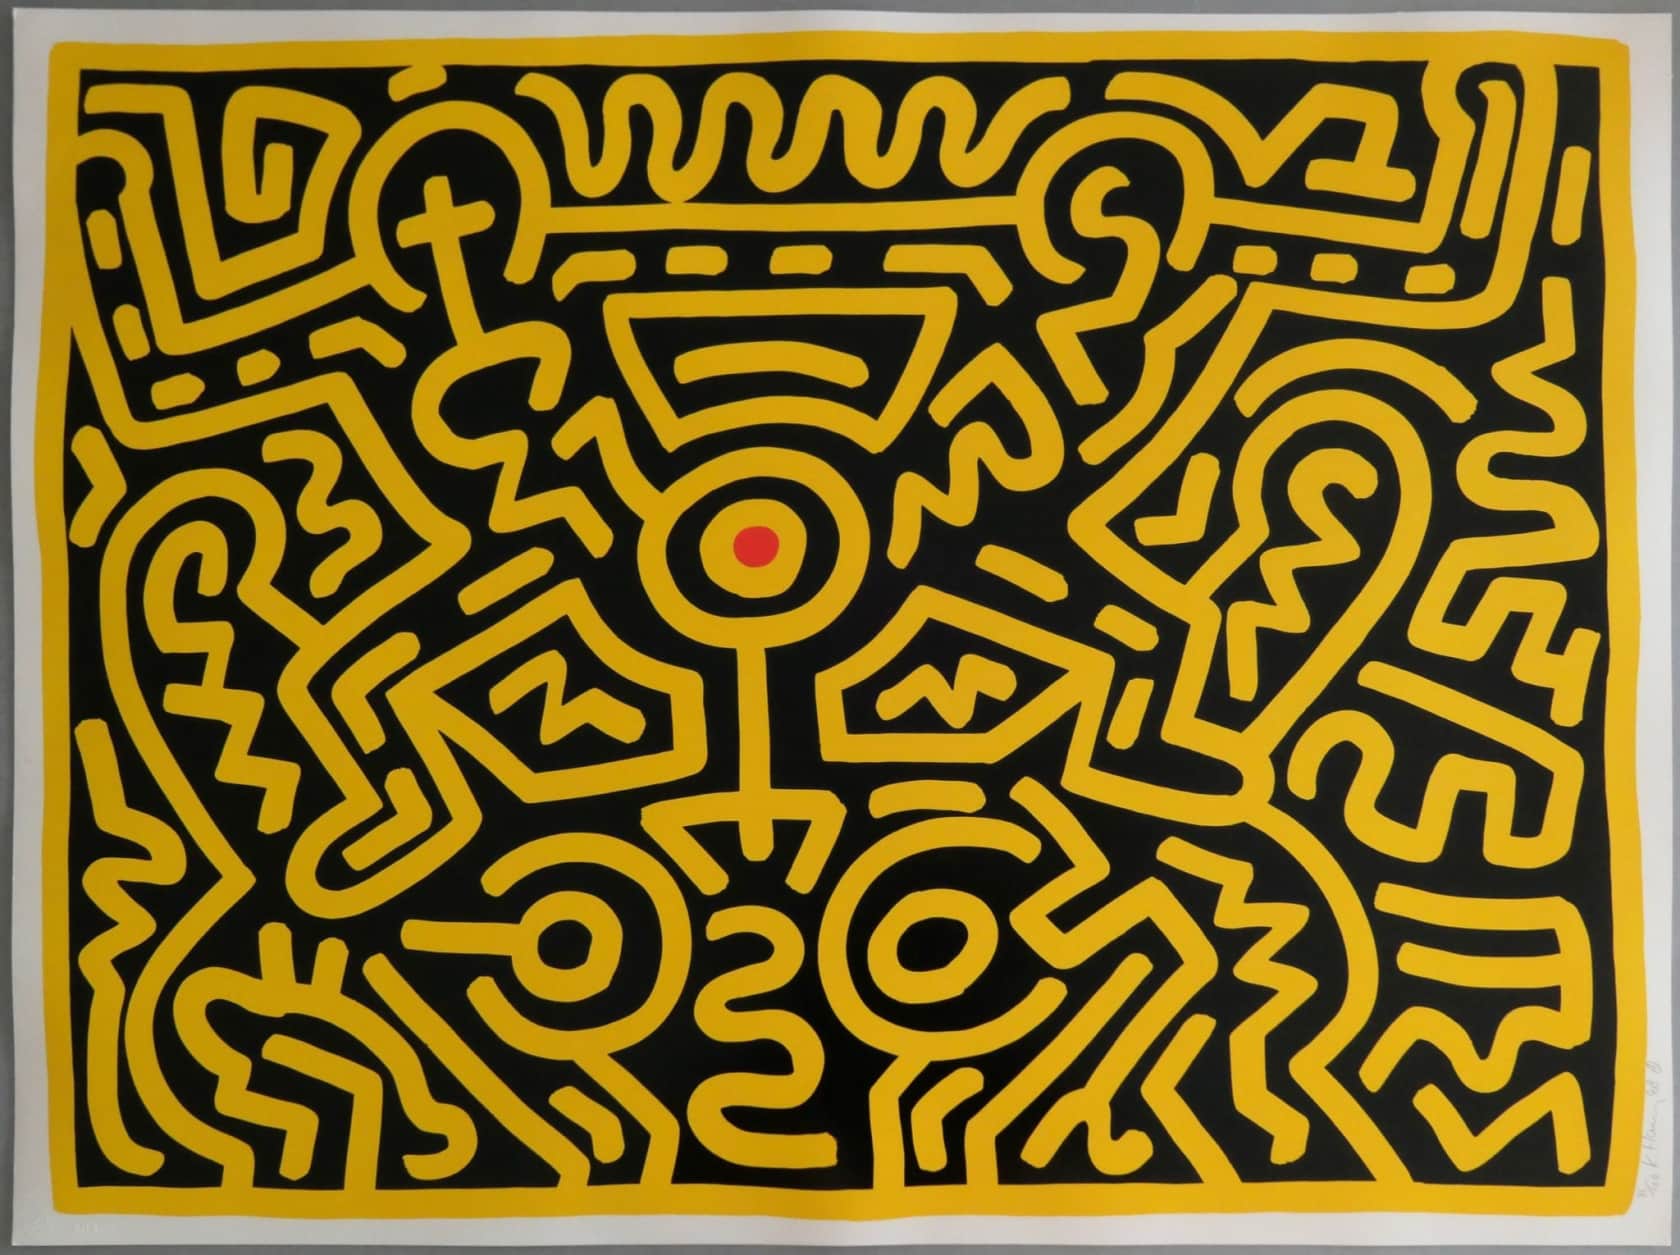 Keith Haring, Growing III, 1989